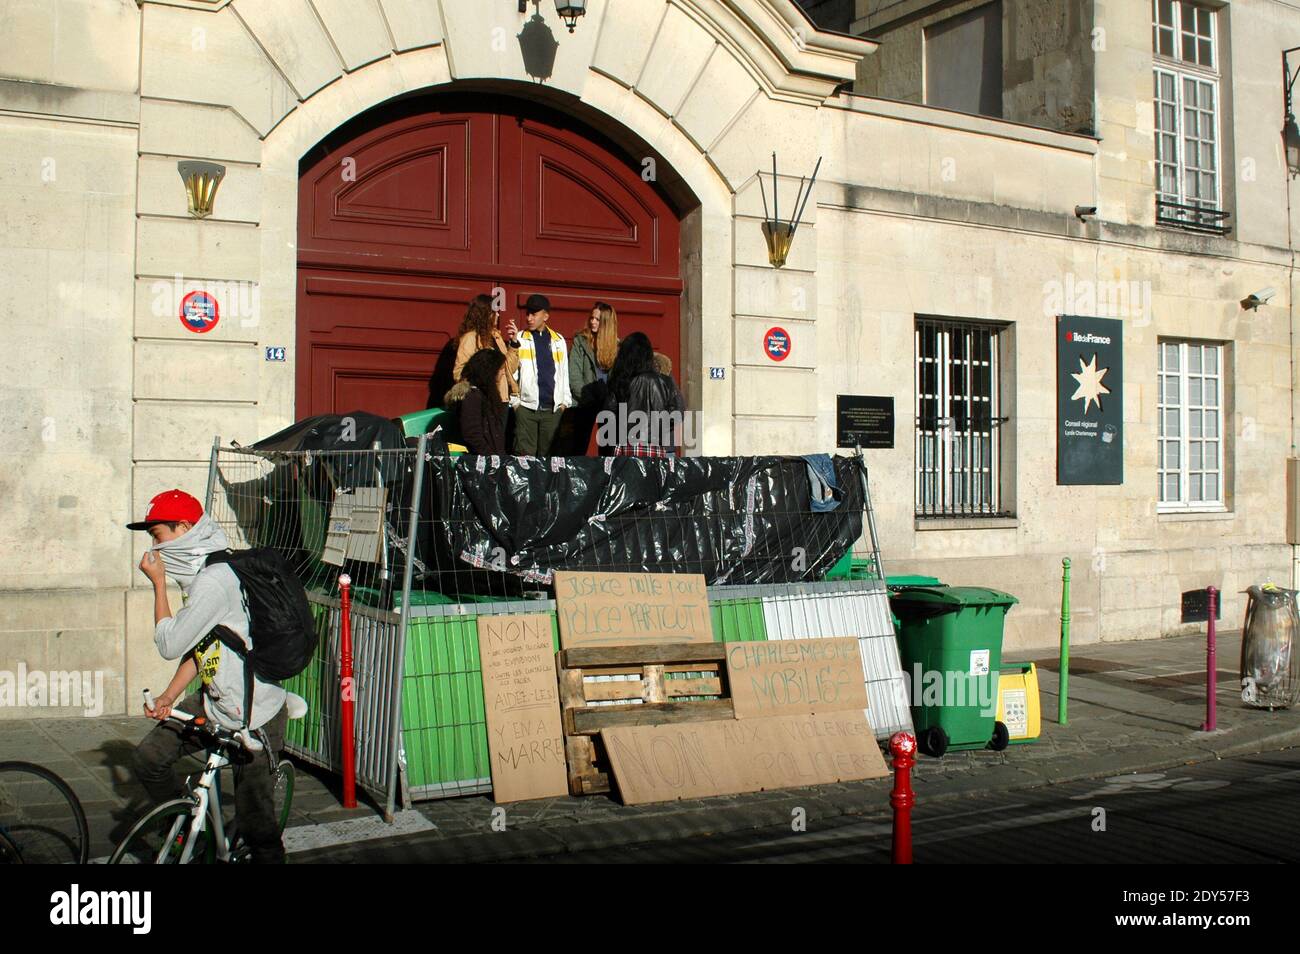 Schüler von Lycee Charlemagne blockierten die Schule in Paris. Die Gymnasiasten nehmen an einer Demonstration Teil und blockieren die Schulen in Paris, Frankreich, am 7. November 2014, in einer Hommage an Remi Fraisse, Eine 21-jährige Umweltaktivistin, die in den frühen Morgenstunden des 26. Oktober bei Zusammenstößen zwischen Sicherheitskräften und Demonstranten des Sivens-Staudammprojekts in Südfrankreich starb. Nach Angaben der Polizei sind 29 Einrichtungen blockiert, 15 völlig und 14 teilweise, 25 Einrichtungen wurden gegen 10 Uhr blockiert, darunter sechs völlig, keine Degradation und keine Gewalt gezählt. Foto von Ala Stockfoto